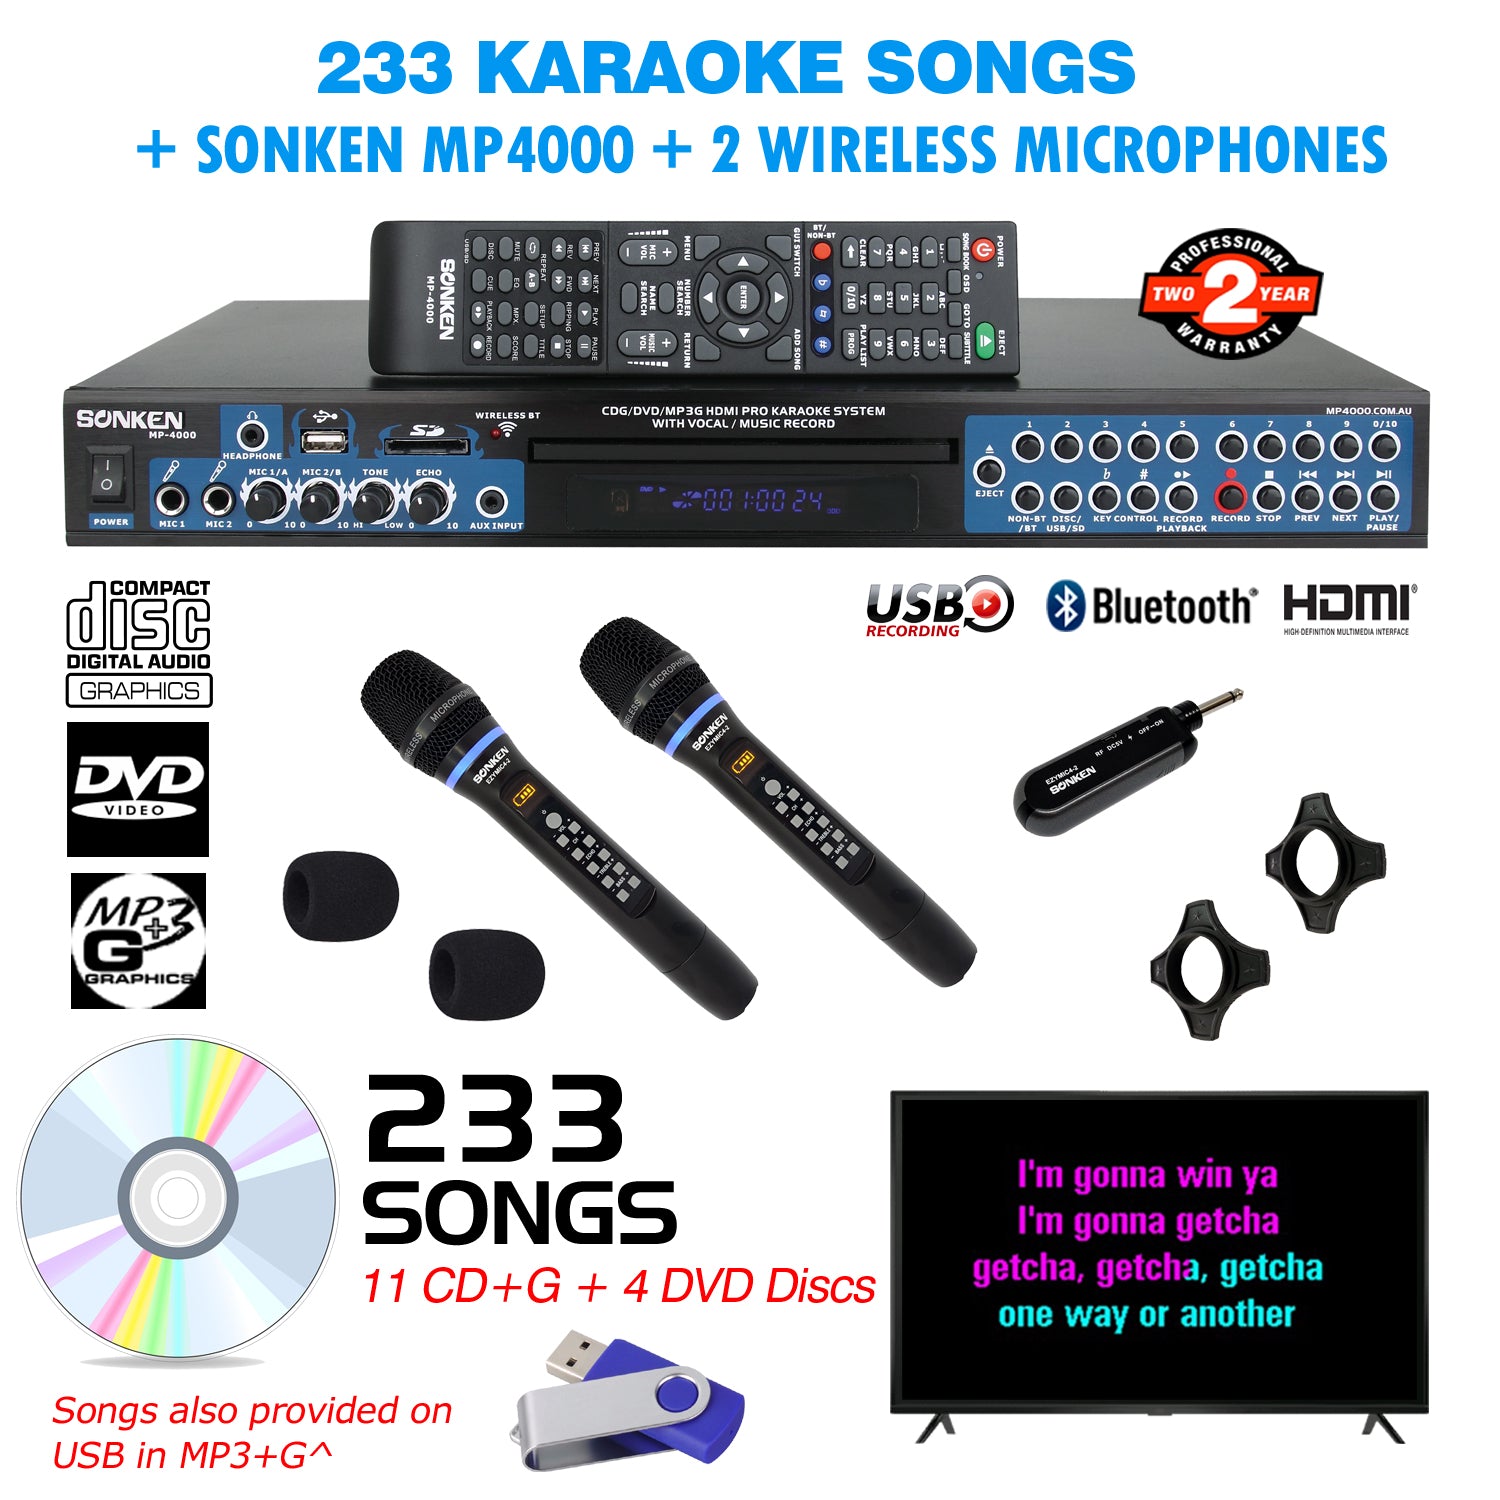 Sonken MP4000 Pro Karaoke Machine + 233 Songs + 2 Wireless Microphones